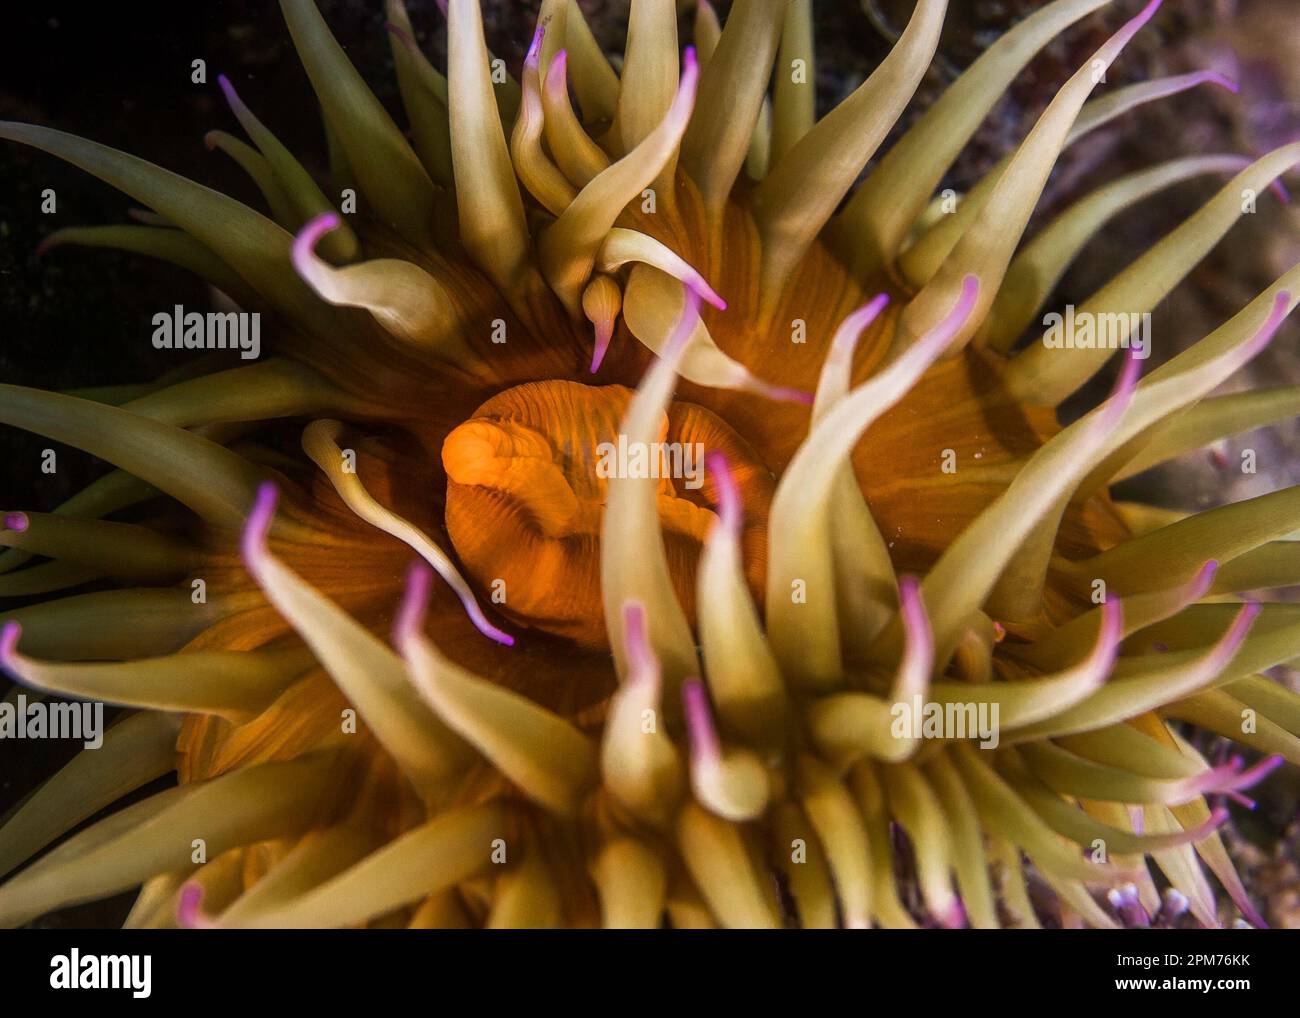 Una macro di un anemone Falso prugna sott'acqua (Pseudactinia flagellifera) con un corpo arancione e tentacoli crema con punte malve Foto Stock